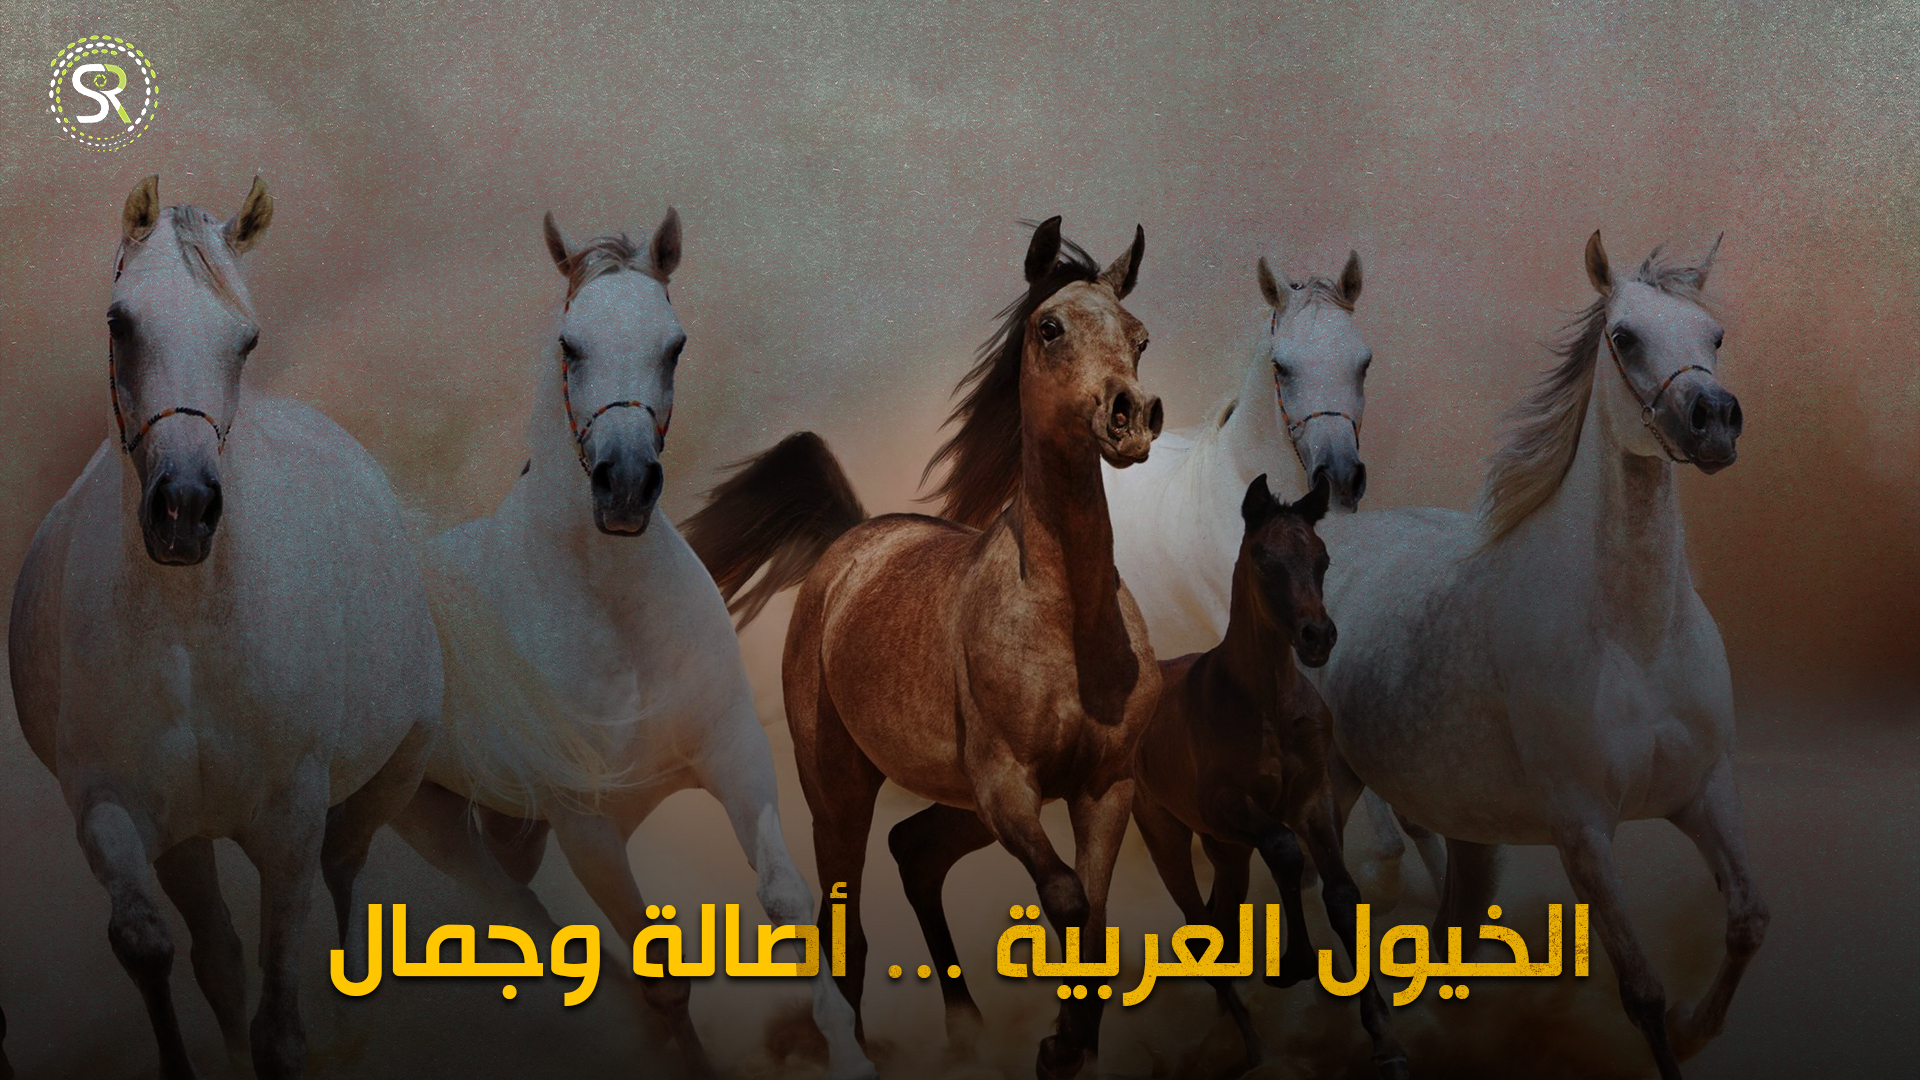 الخيول العربيَّة في تركيا ... أصالةٌ وجمالٌ